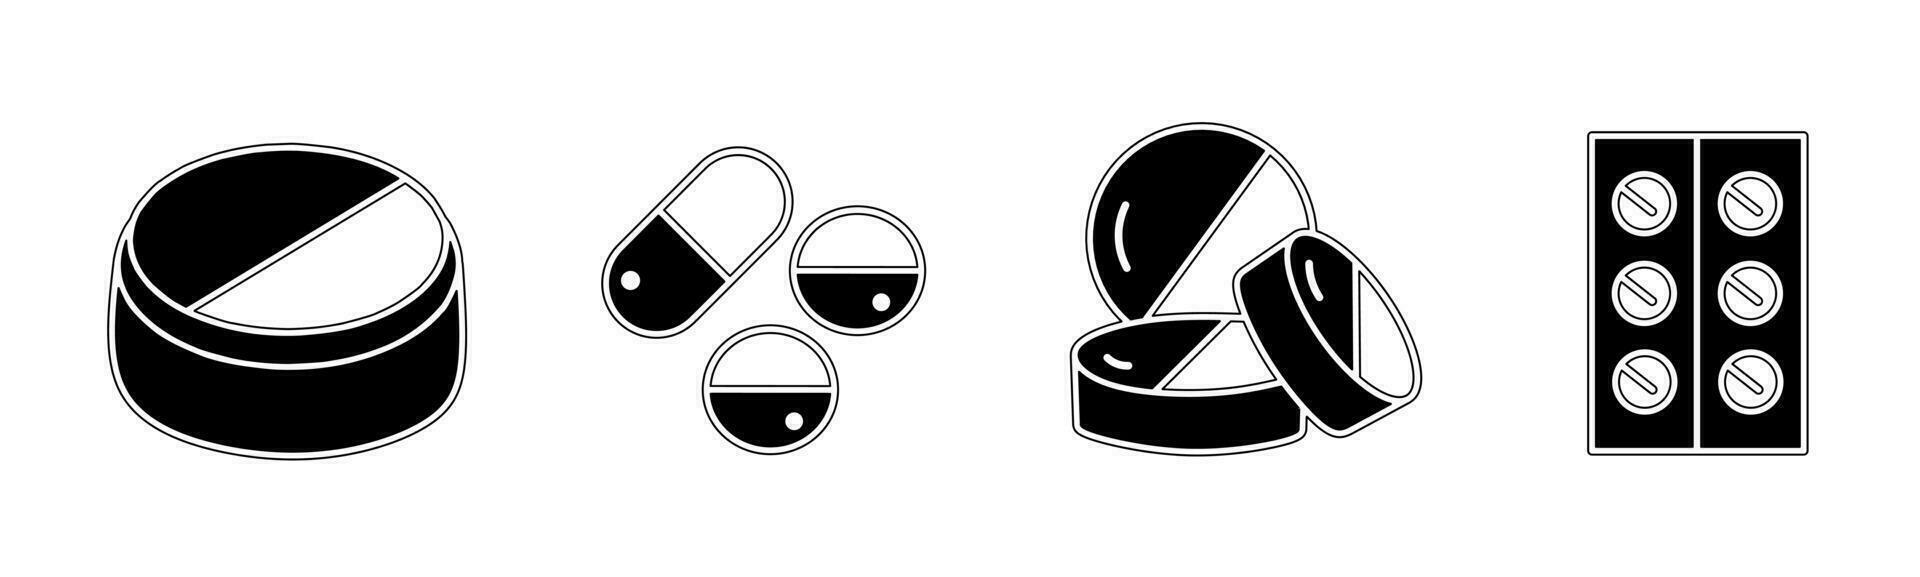 Droge Symbol Vektor schwarz und Weiß Illustration Design zum Geschäft. Lager Vektor.